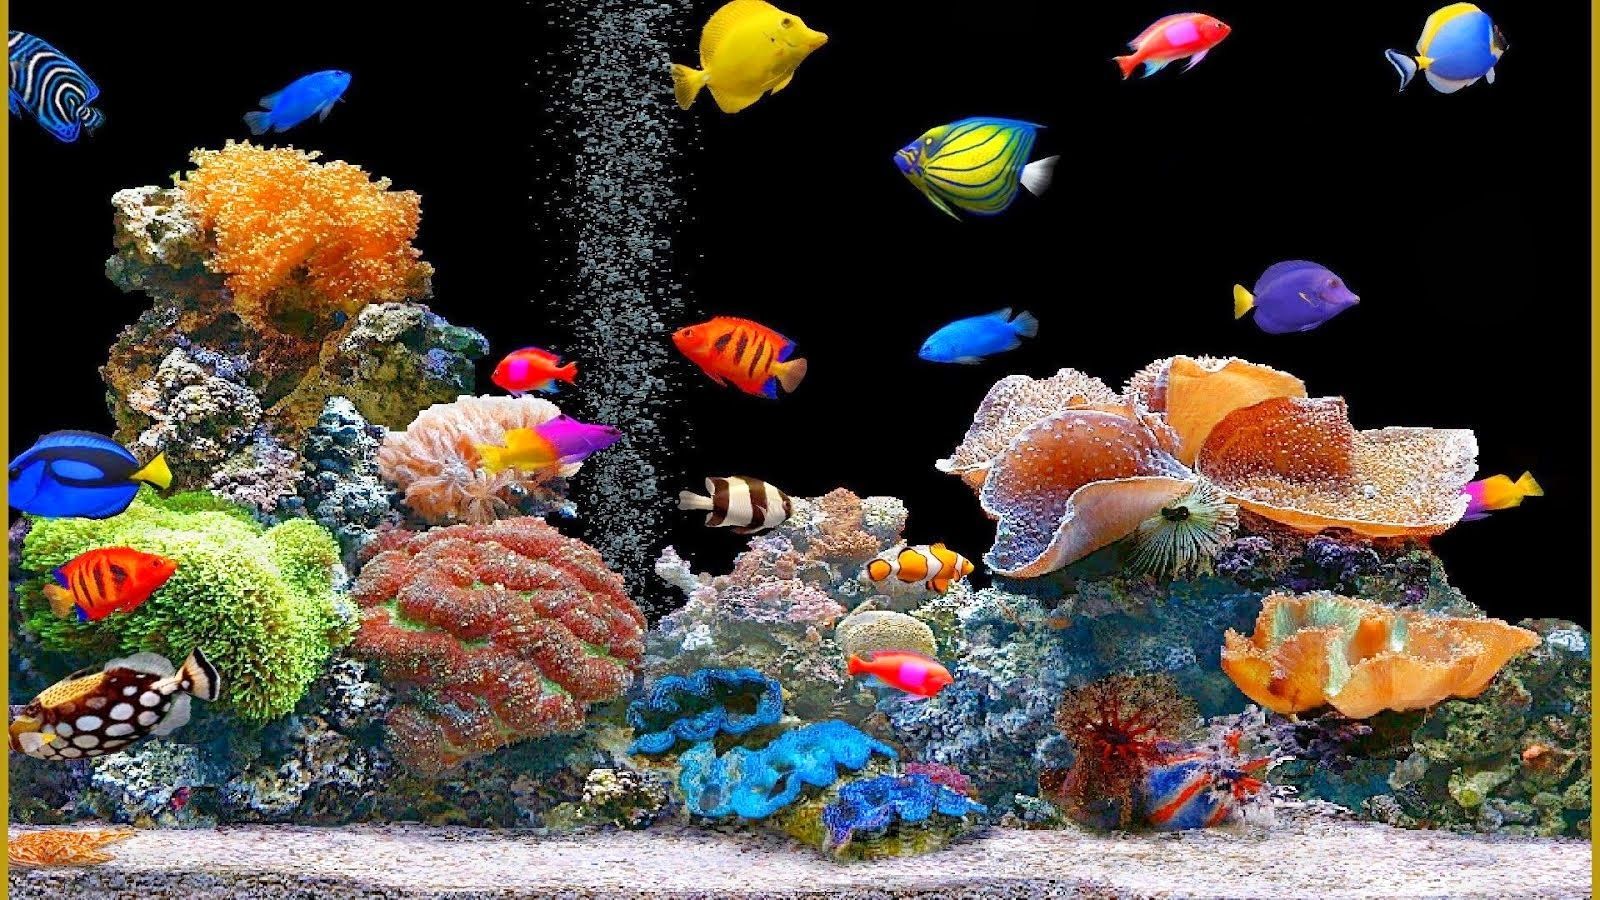 aquarium 4k wallpaper